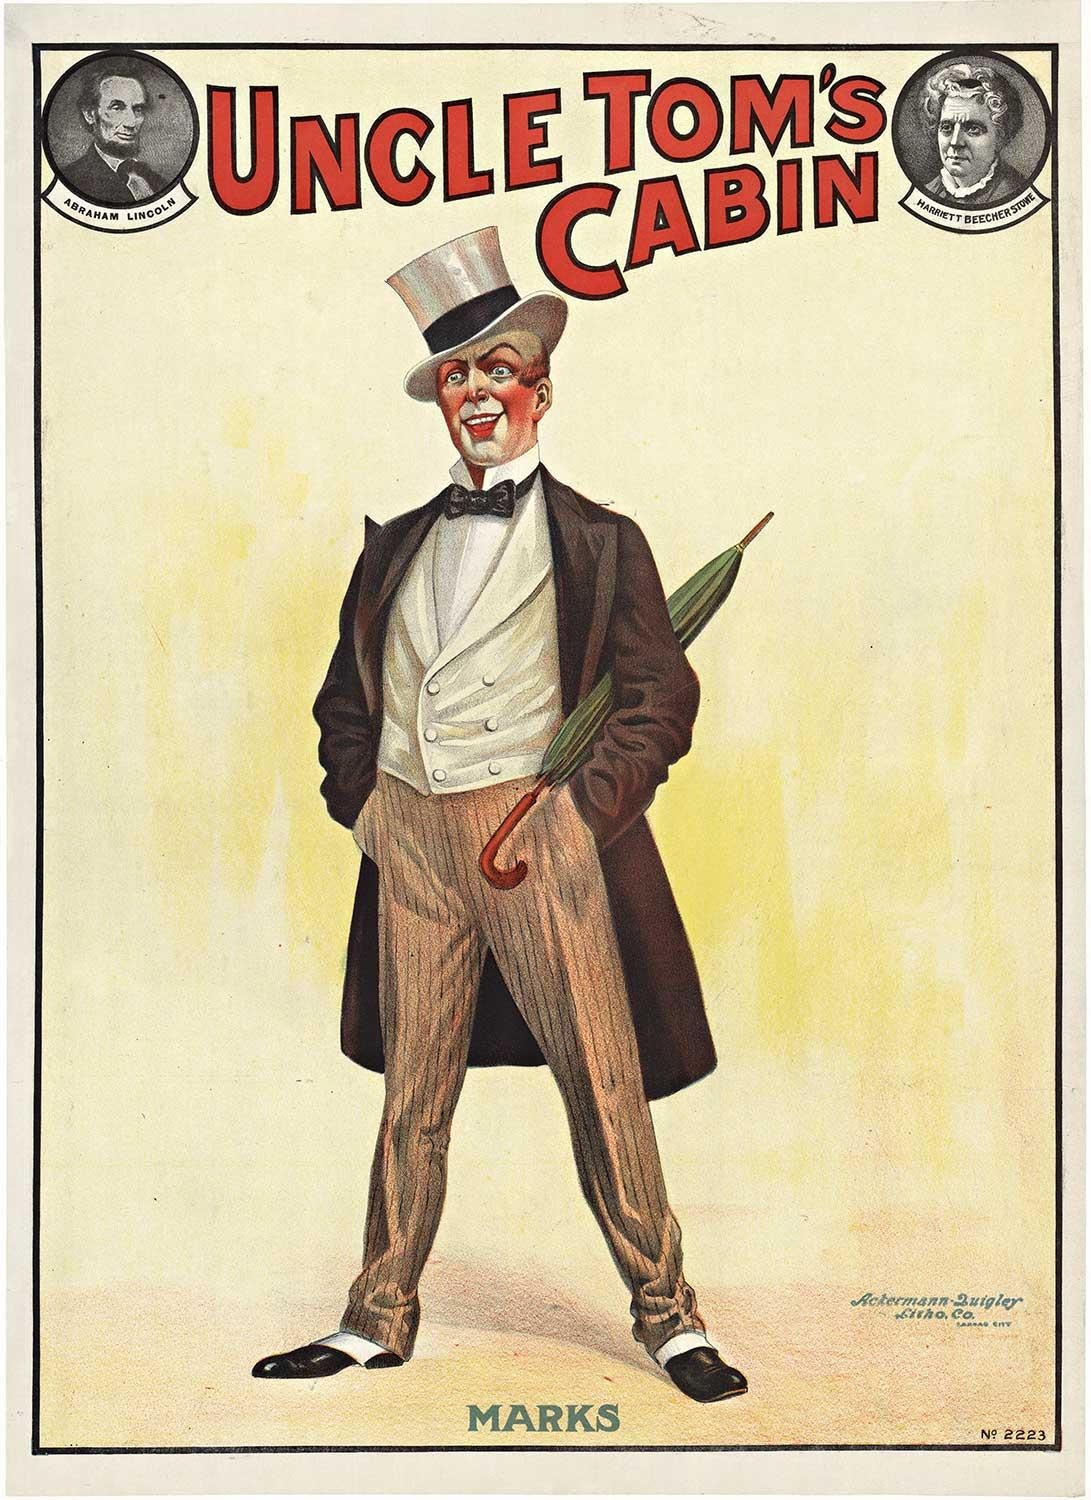 Original 'Uncle Tom's Cabin' vintage theater poster  art nouveau